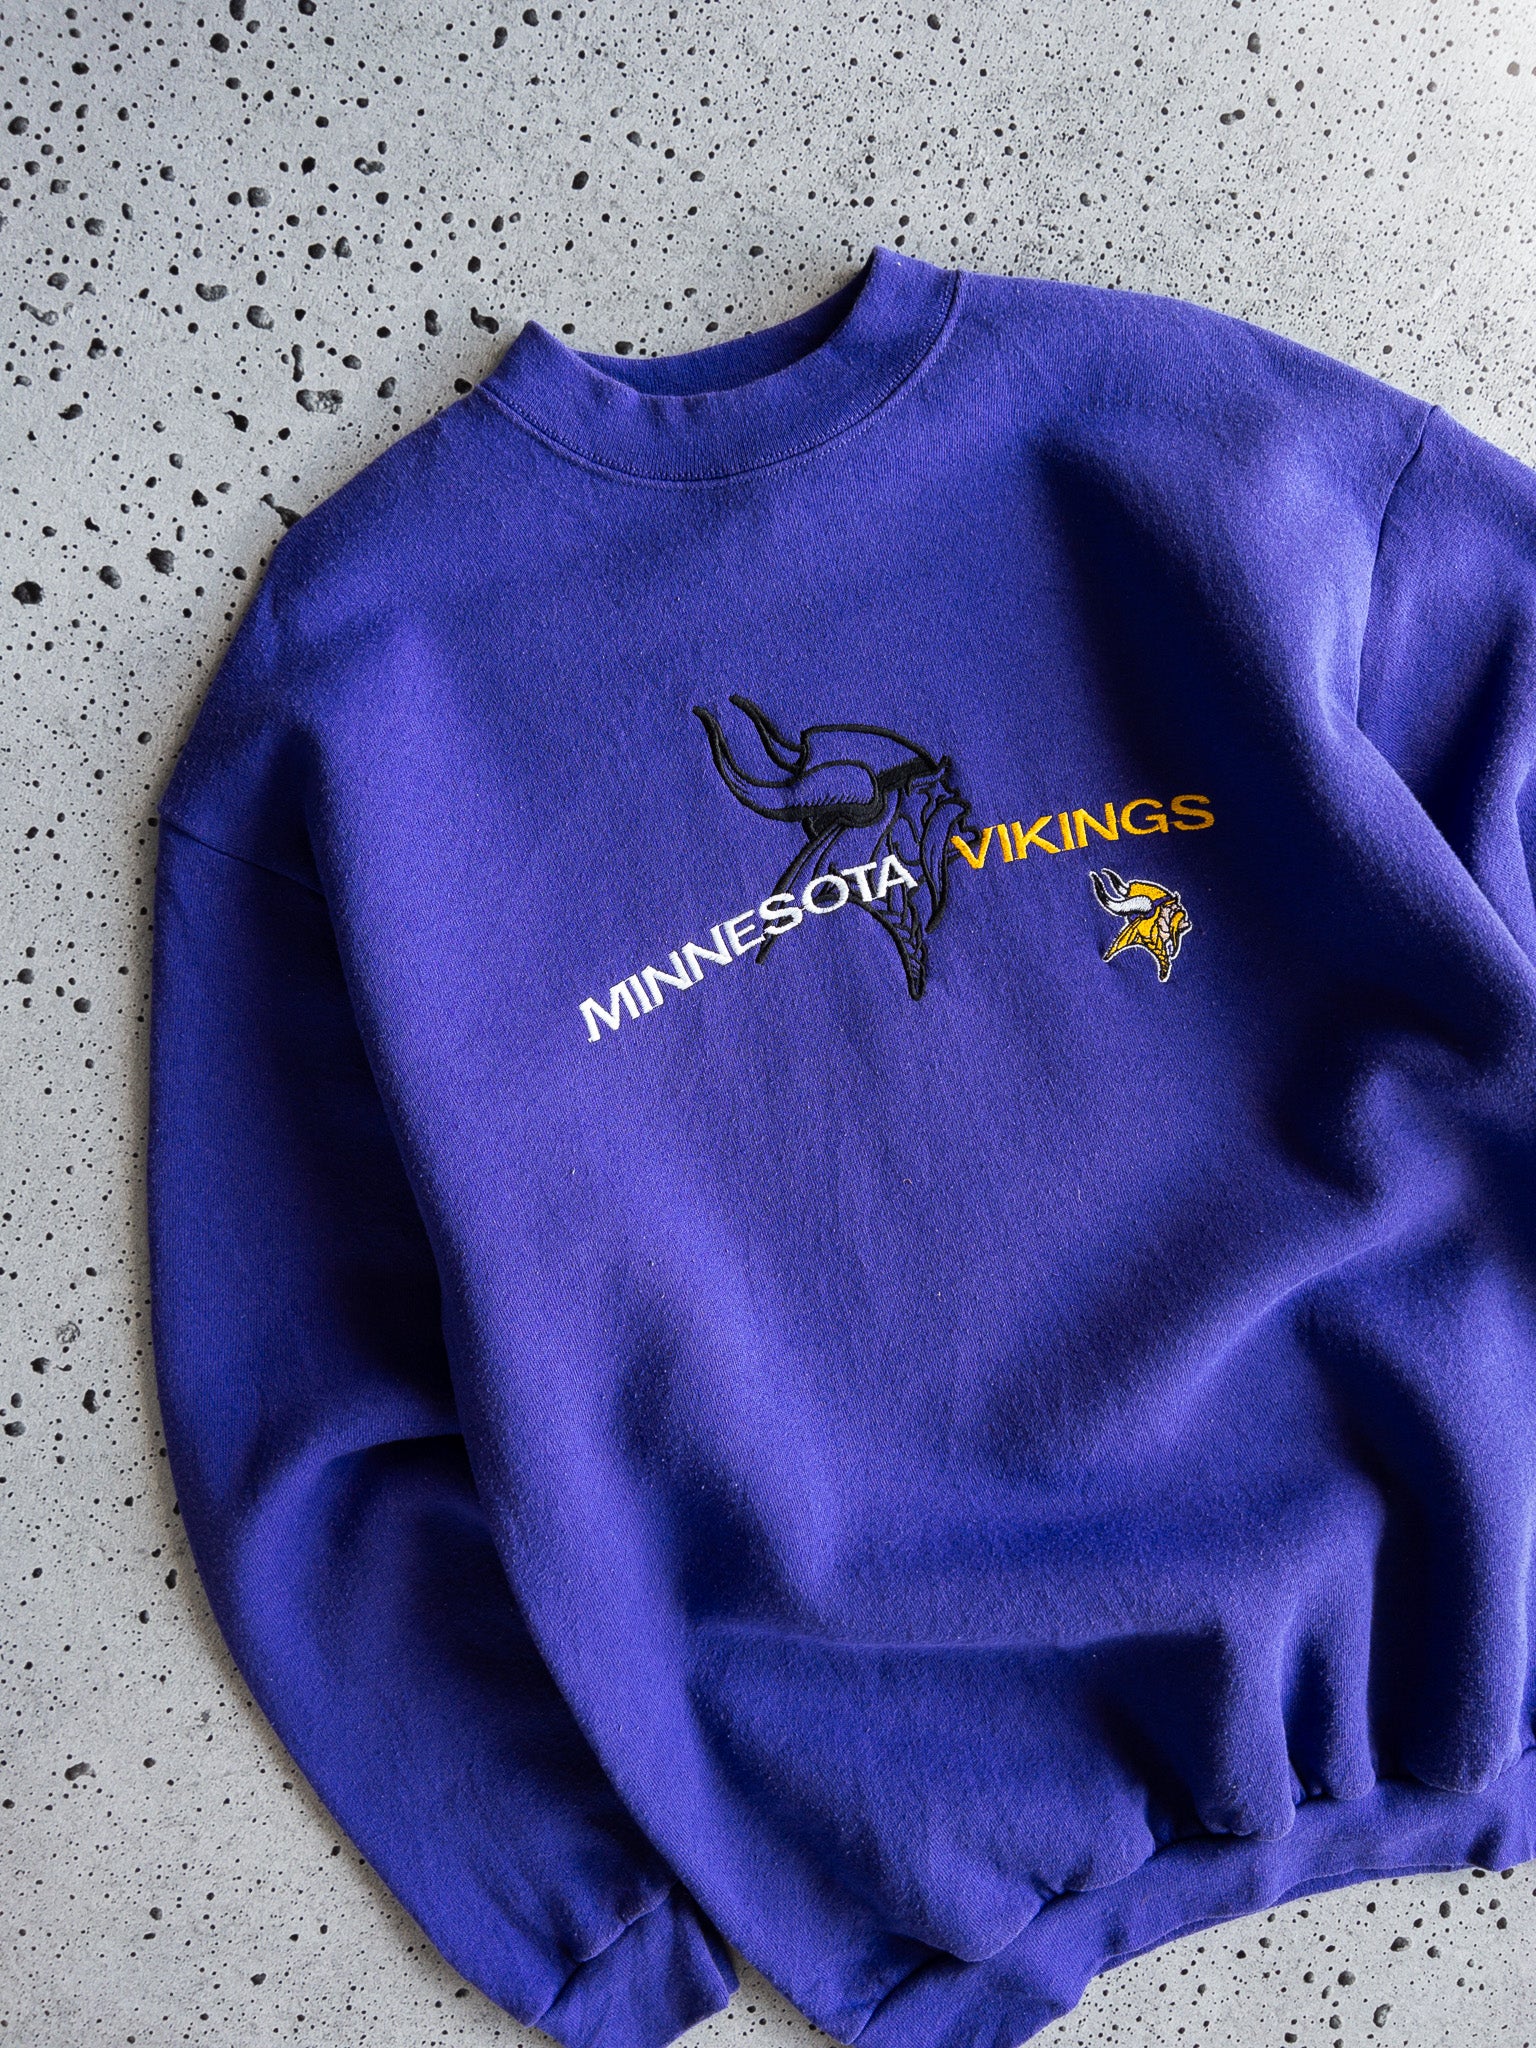 Vintage Minnesota Vikings Sweatshirt (L)